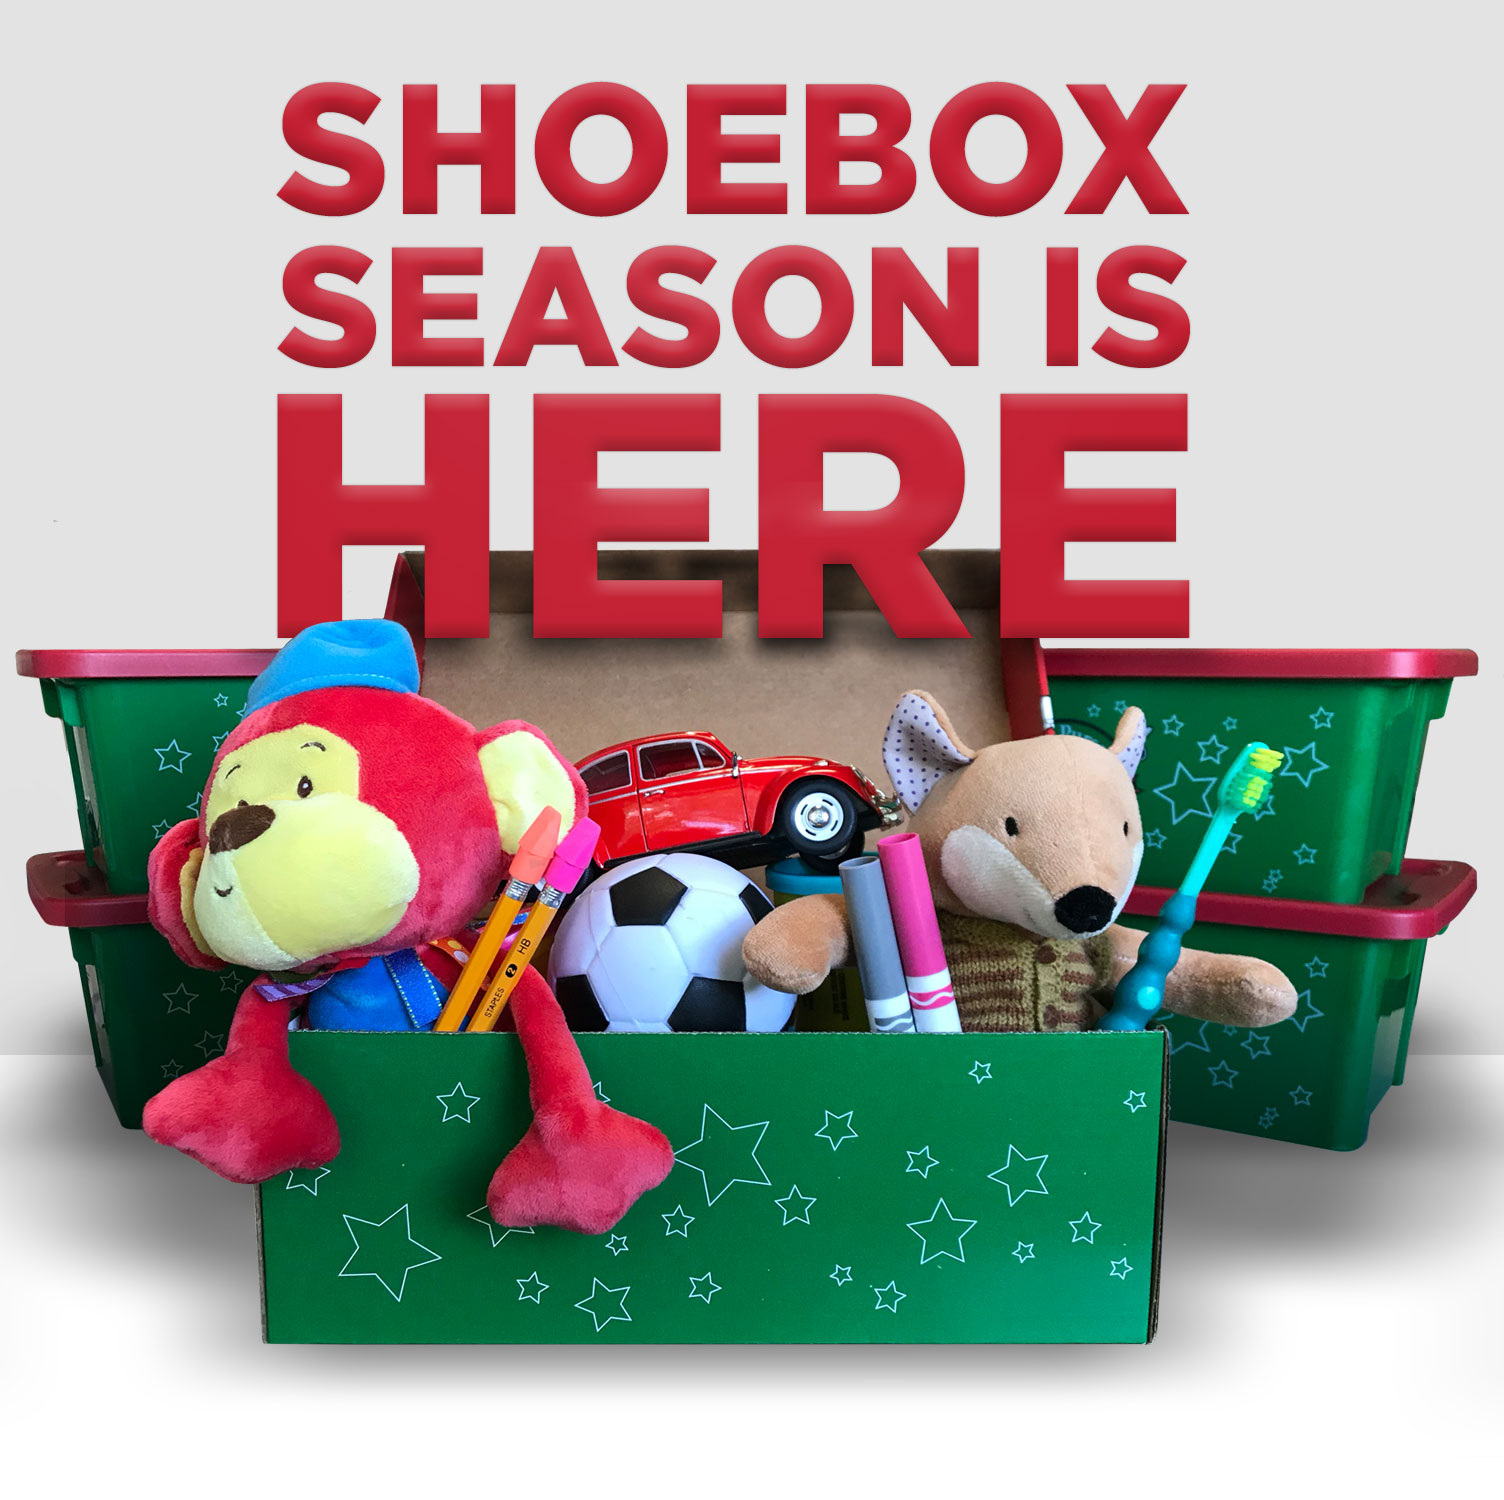 Shoebox Season is Here!